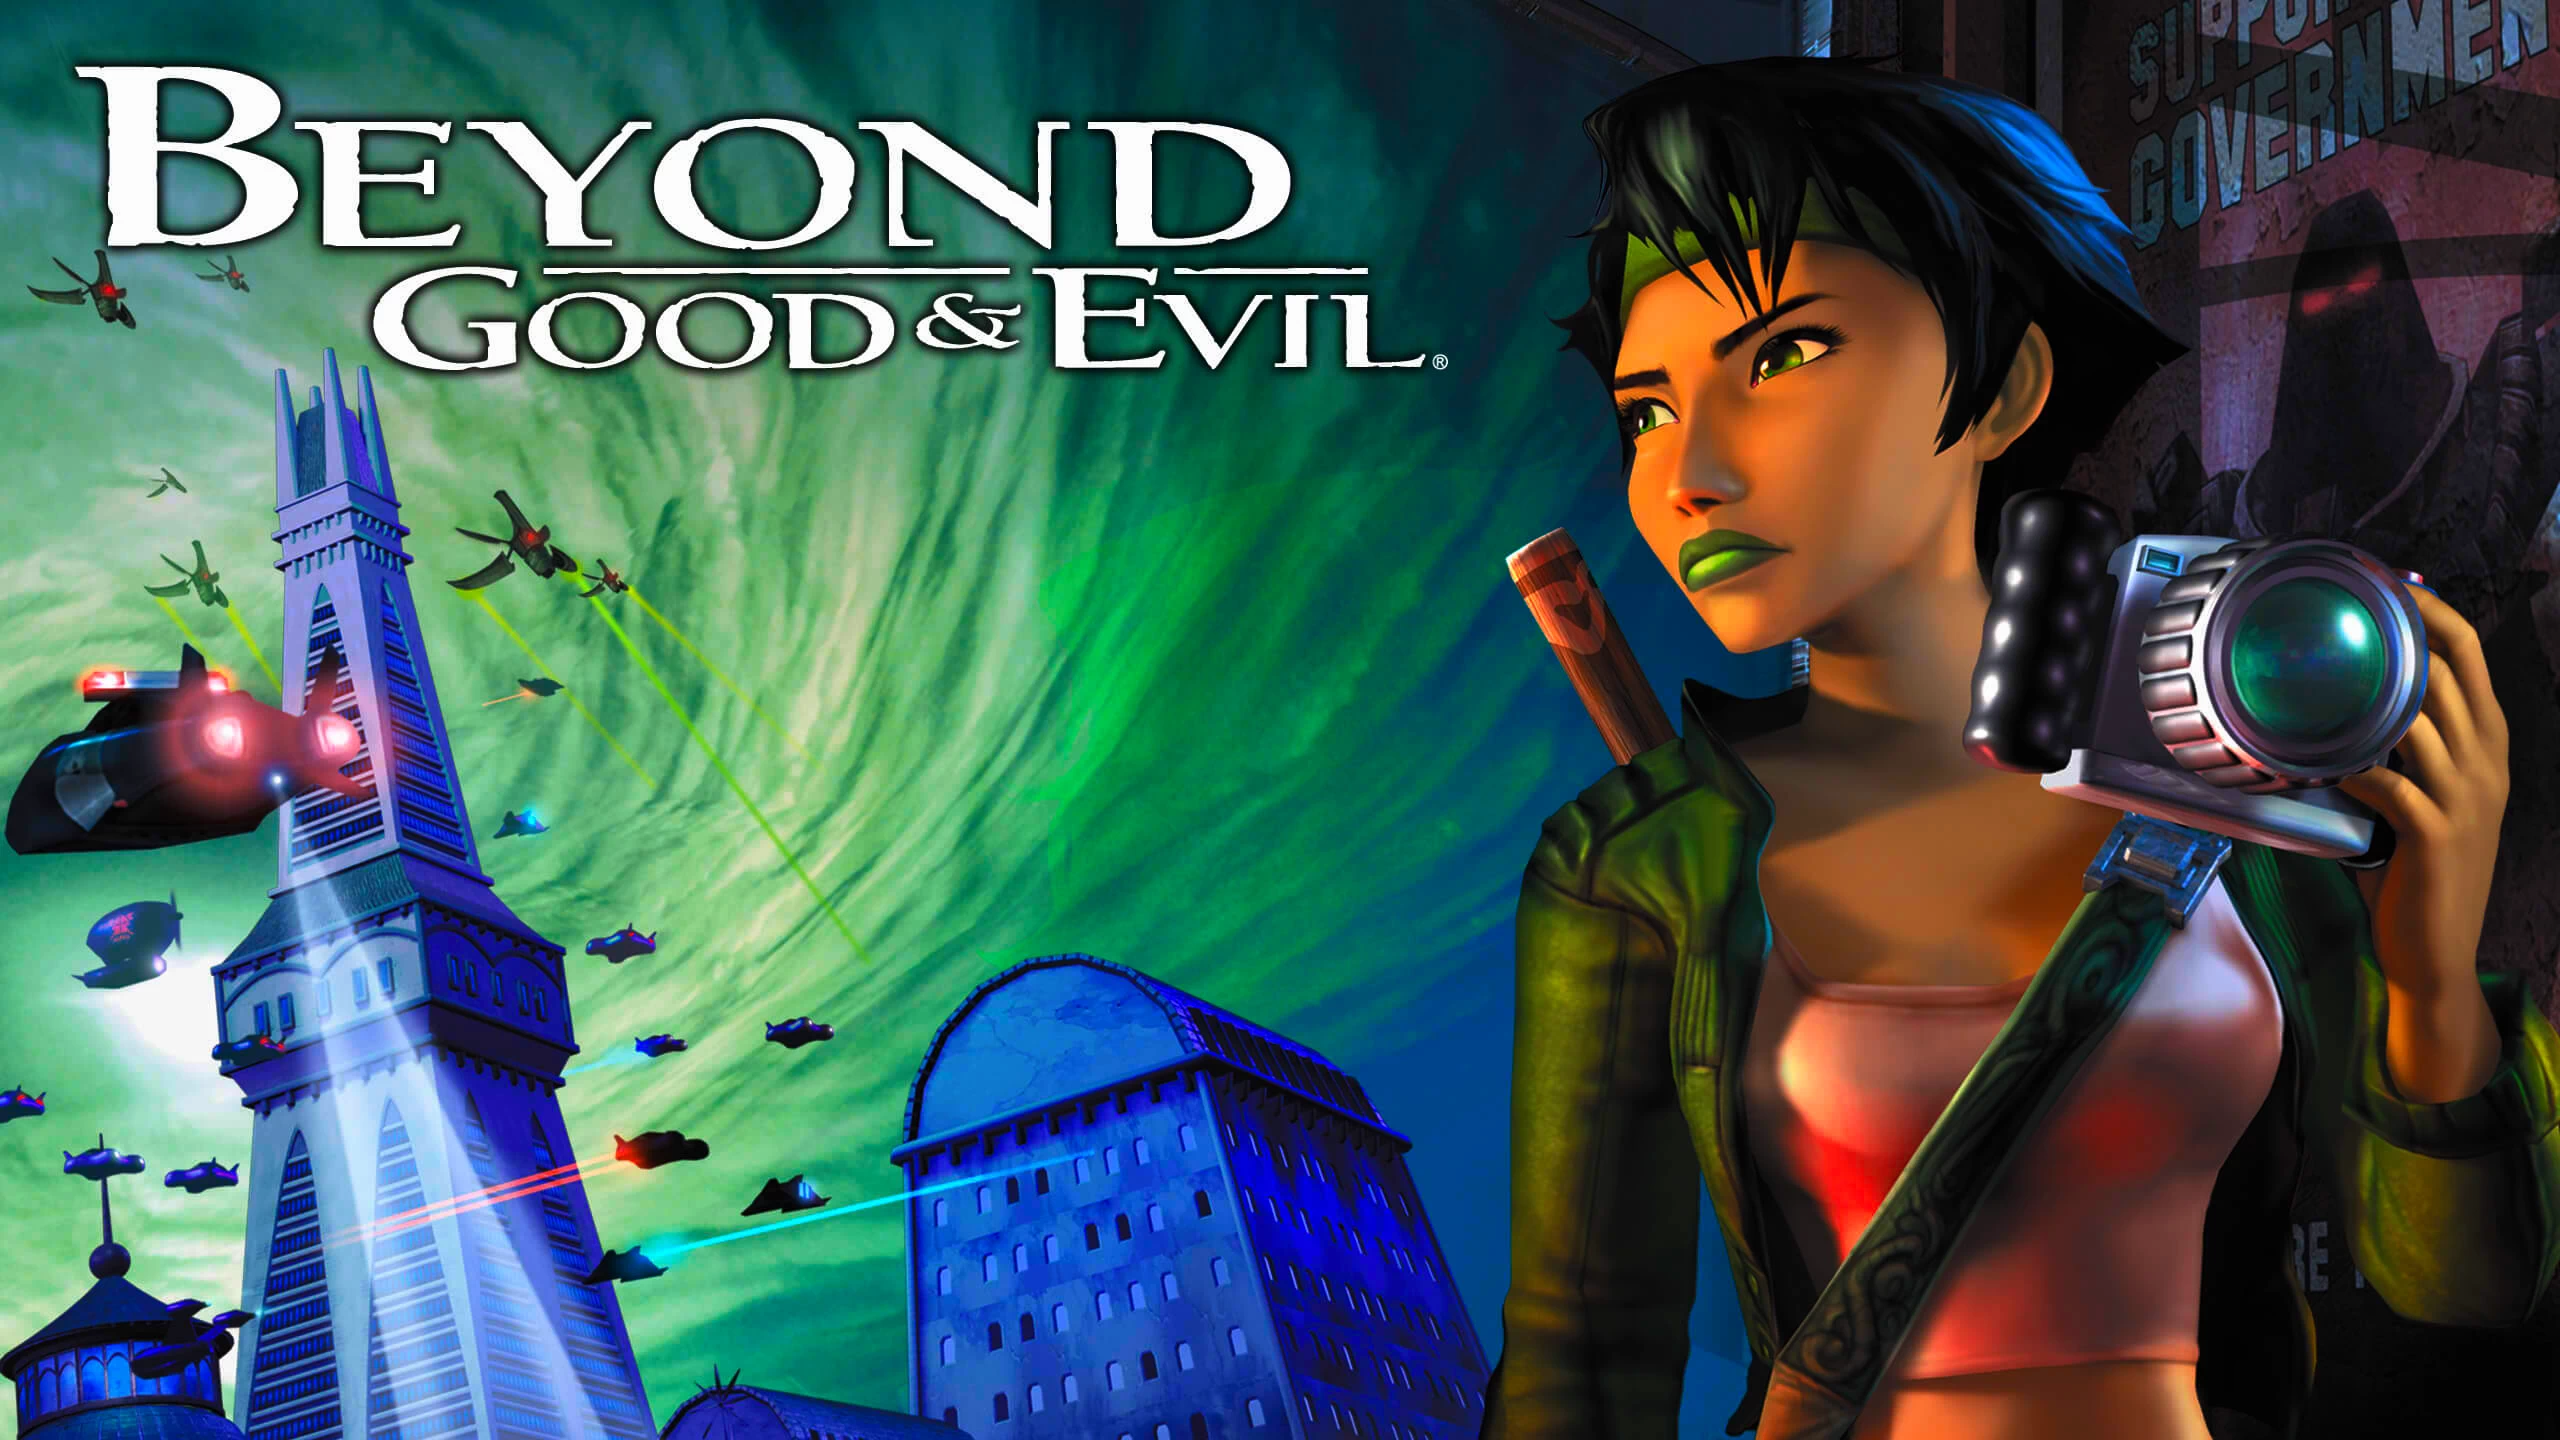 Beyond Good & Evil Çıkmaya Hazırlanırken 20 Haziranda Oyun Hakkında Açıklama Yapılacak